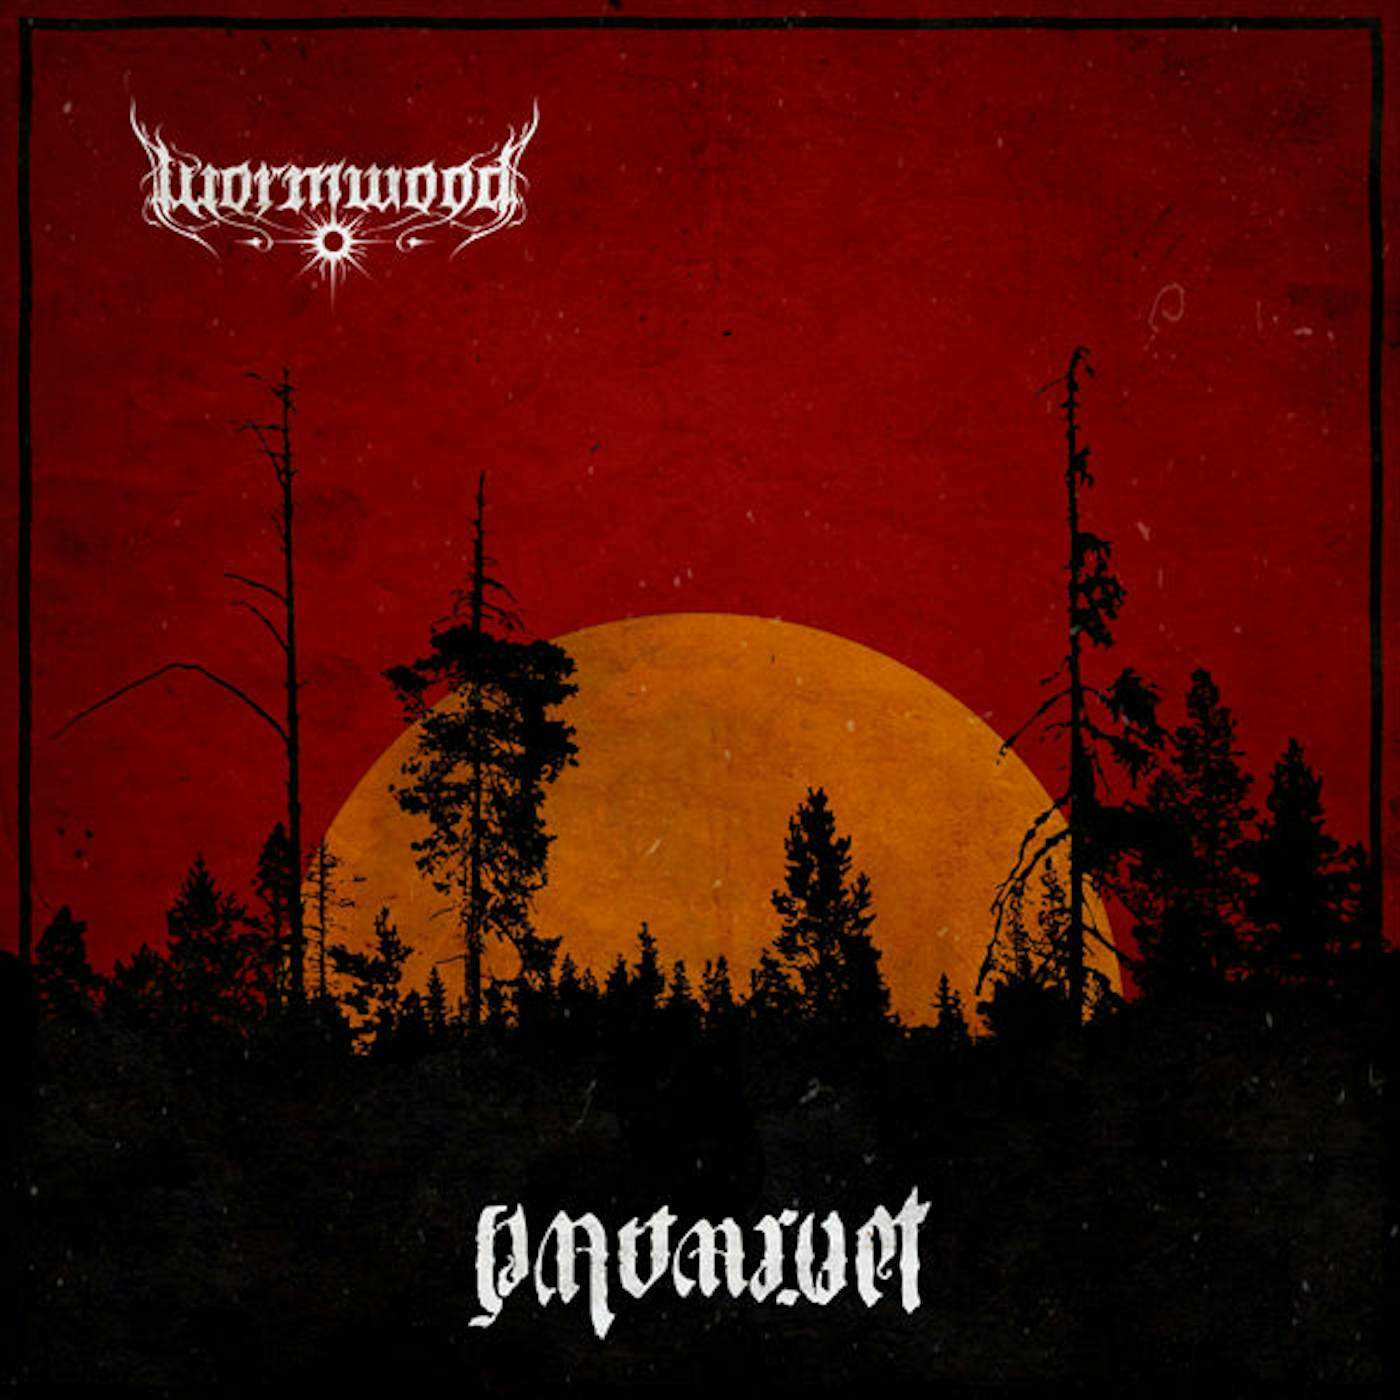 Wormwood LP - Nattarvet (Red/Black Splatter) (Vinyl)